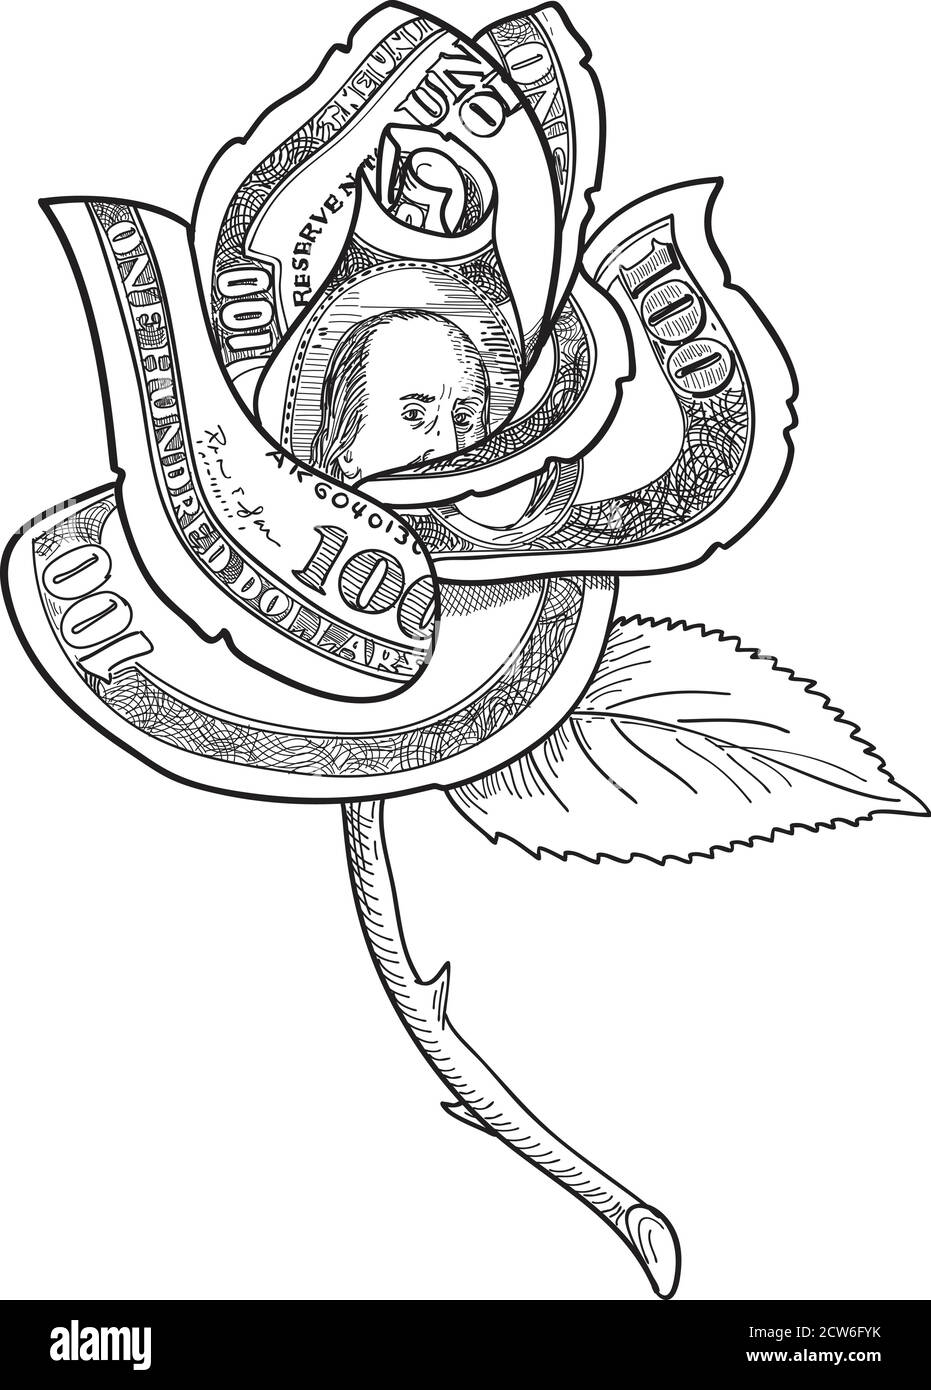 Dessin d'une illustration de style esquisse d'une fleur de rose avec de l'argent Ou une facture de cent dollars imprimée sur des pétales avec feuille et tige épineuse sur l'isolat Illustration de Vecteur